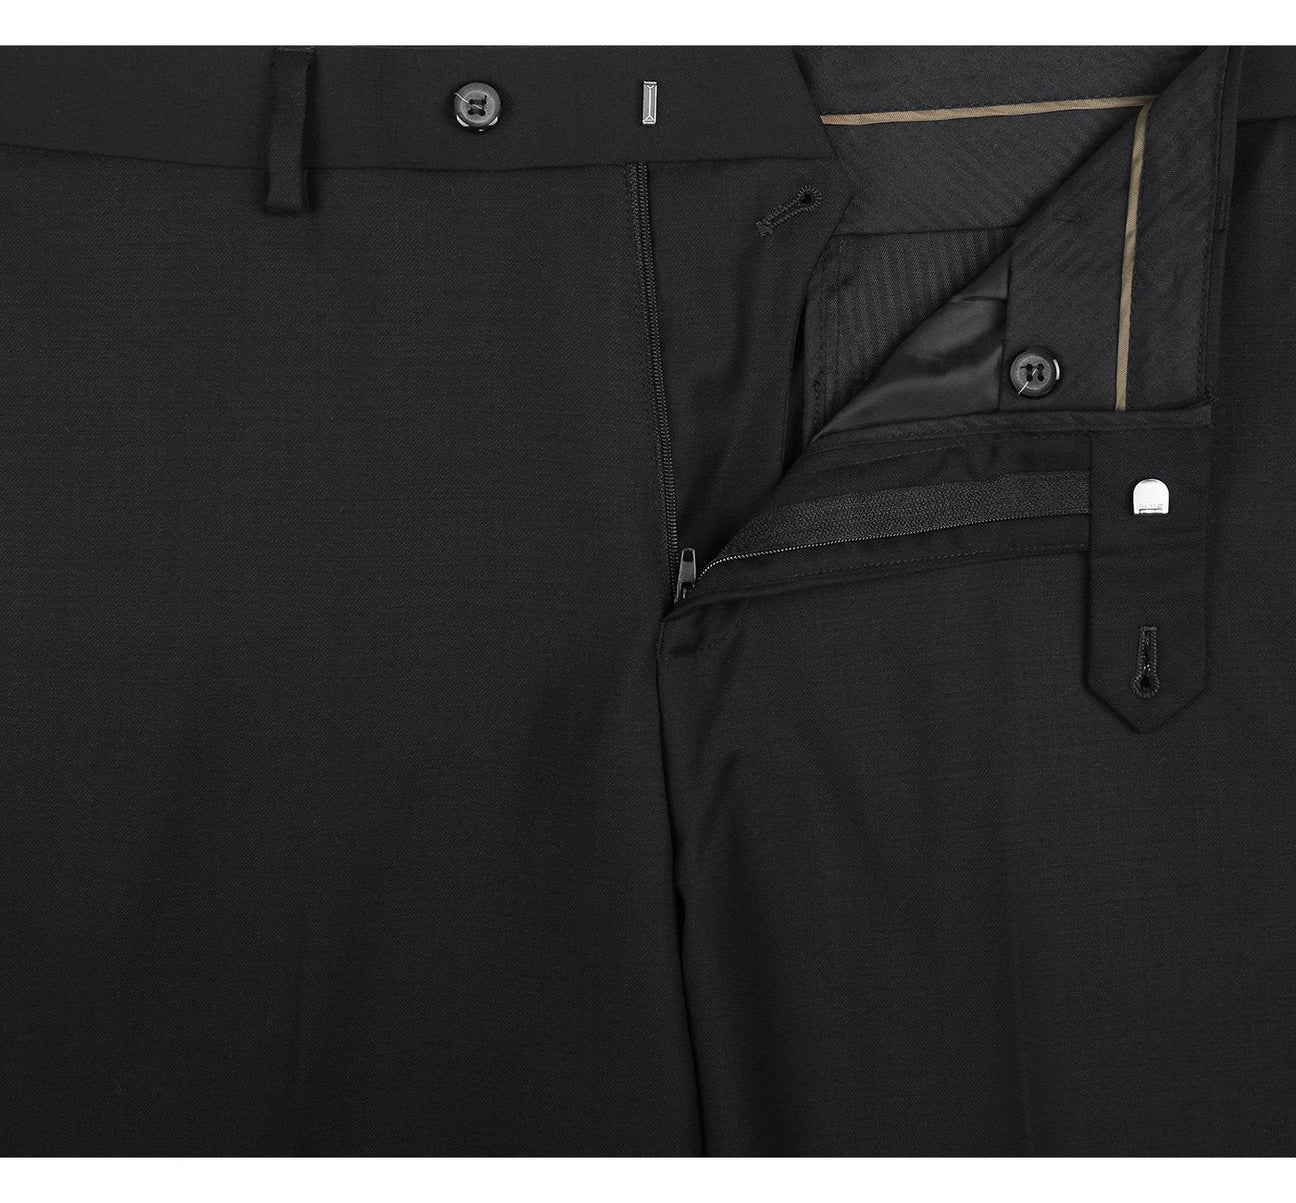 Renoir Black Slim Fit 100% Virgin Wool Suit Slacks 508-1